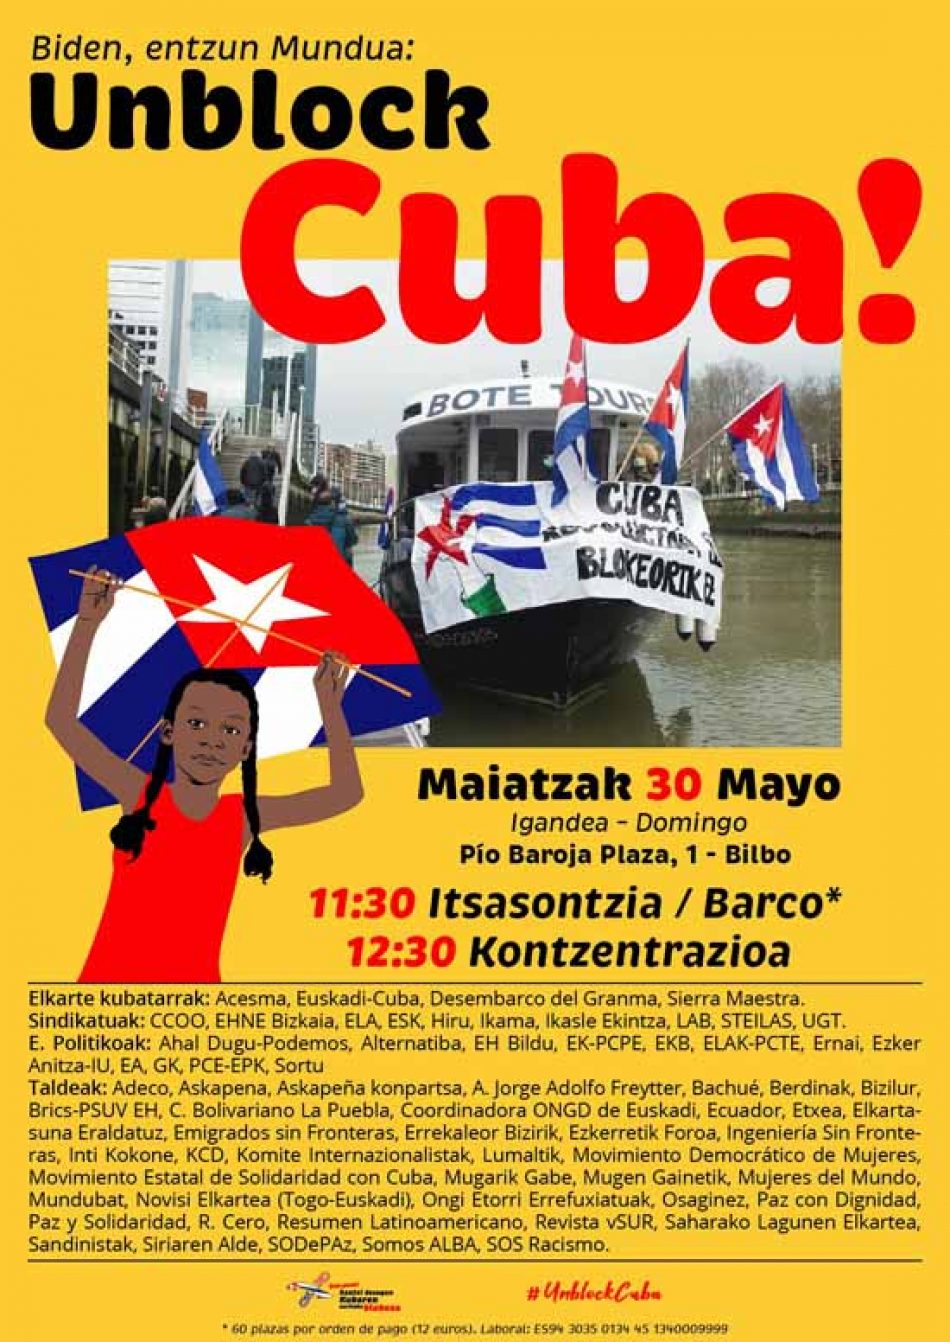 «Unblock Cuba!» en Euskal Herria: campaña llega a 300.000 jeringuillas y barco solidario recorrerá ría de Bilbao, domingo 30 de Mayo